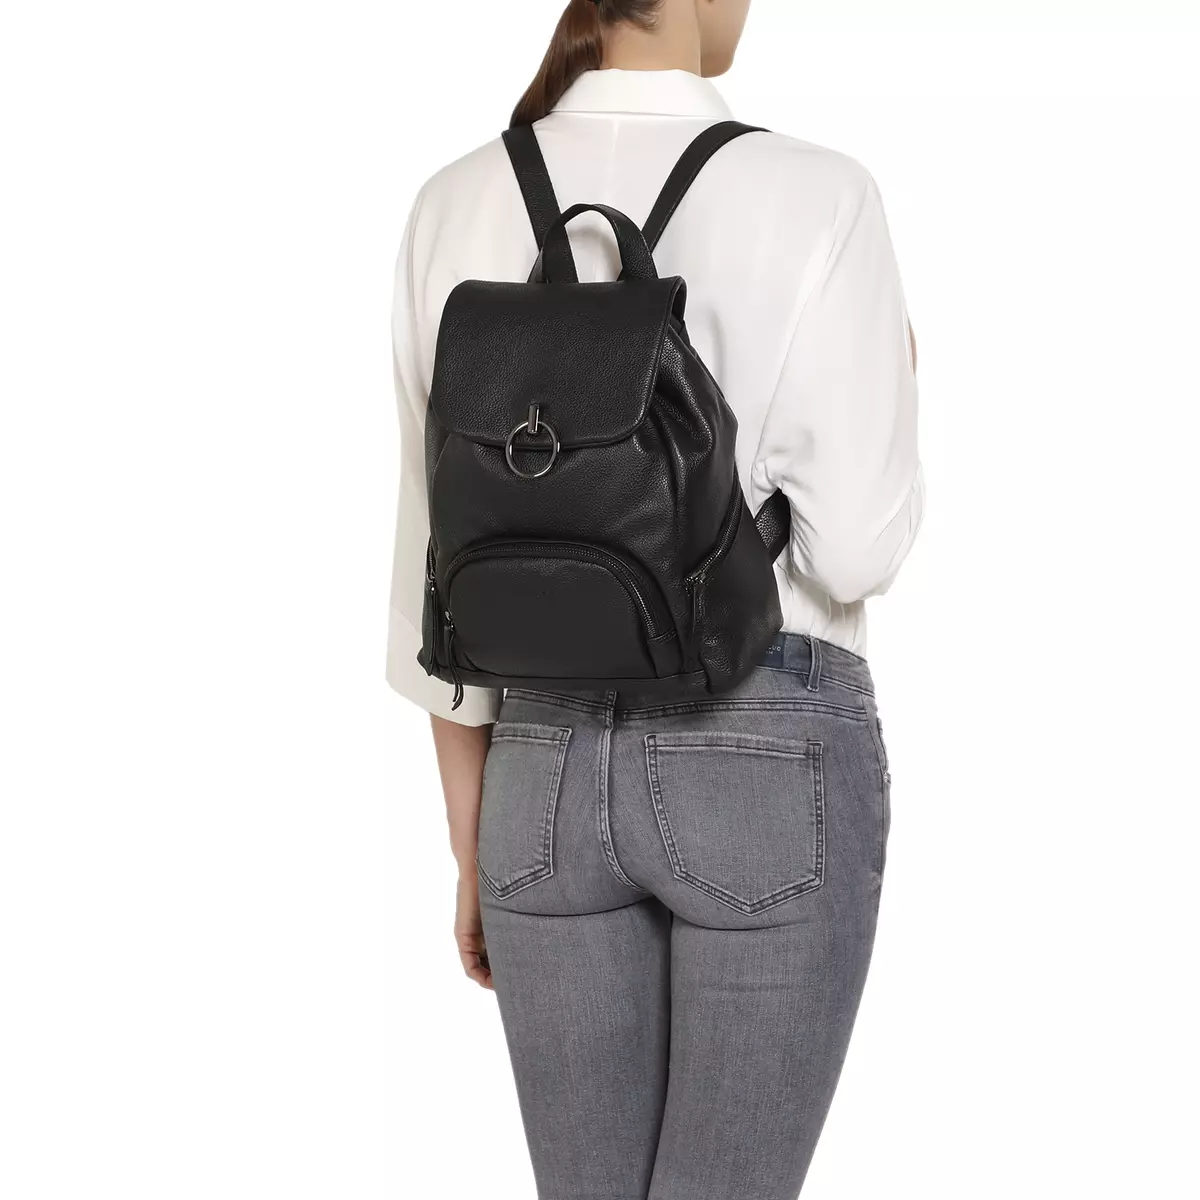 Backpacks backpacks: manga ny vehivavy, mainty, maitso ary mavokely, volontany ary modely hafa 15451_26